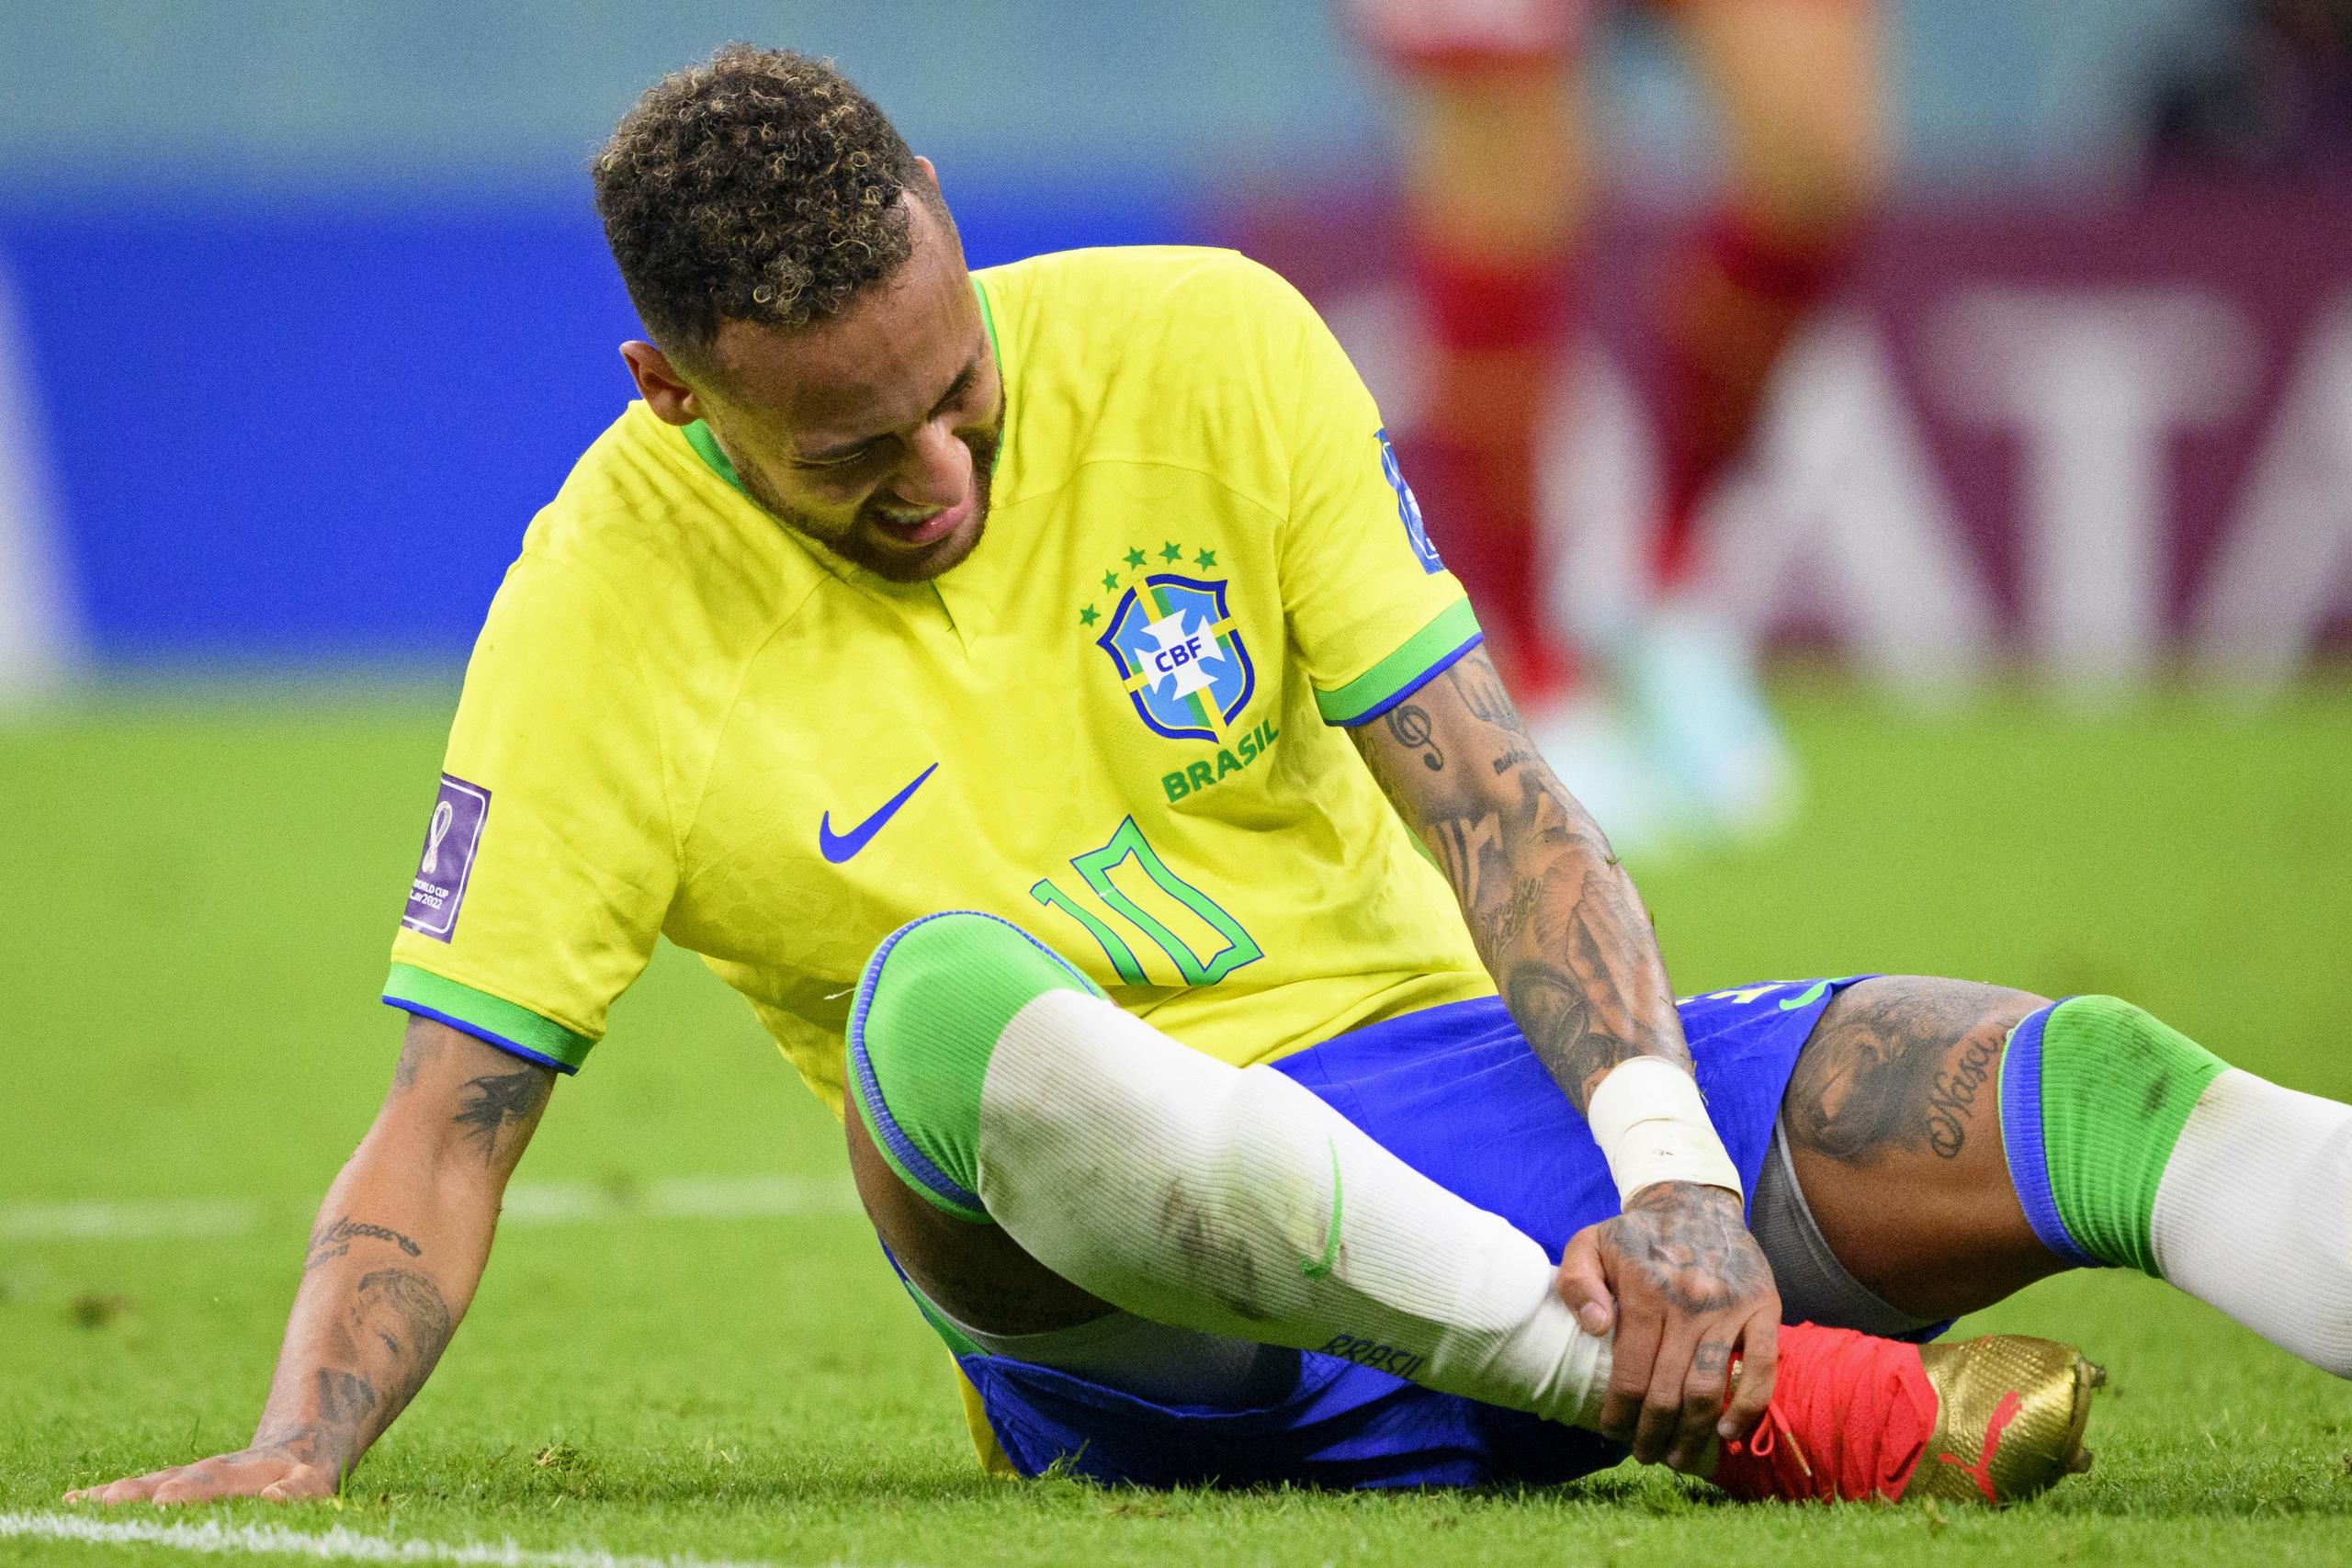 El delantero brasileño Neymar se sujeta el tobillo durante el partido contra Serbia por el Grupo G del Mundial, el jueves 24 de noviembre, en Lusail, Qatar. (Laurent Gillieron/Keystone vía AP)